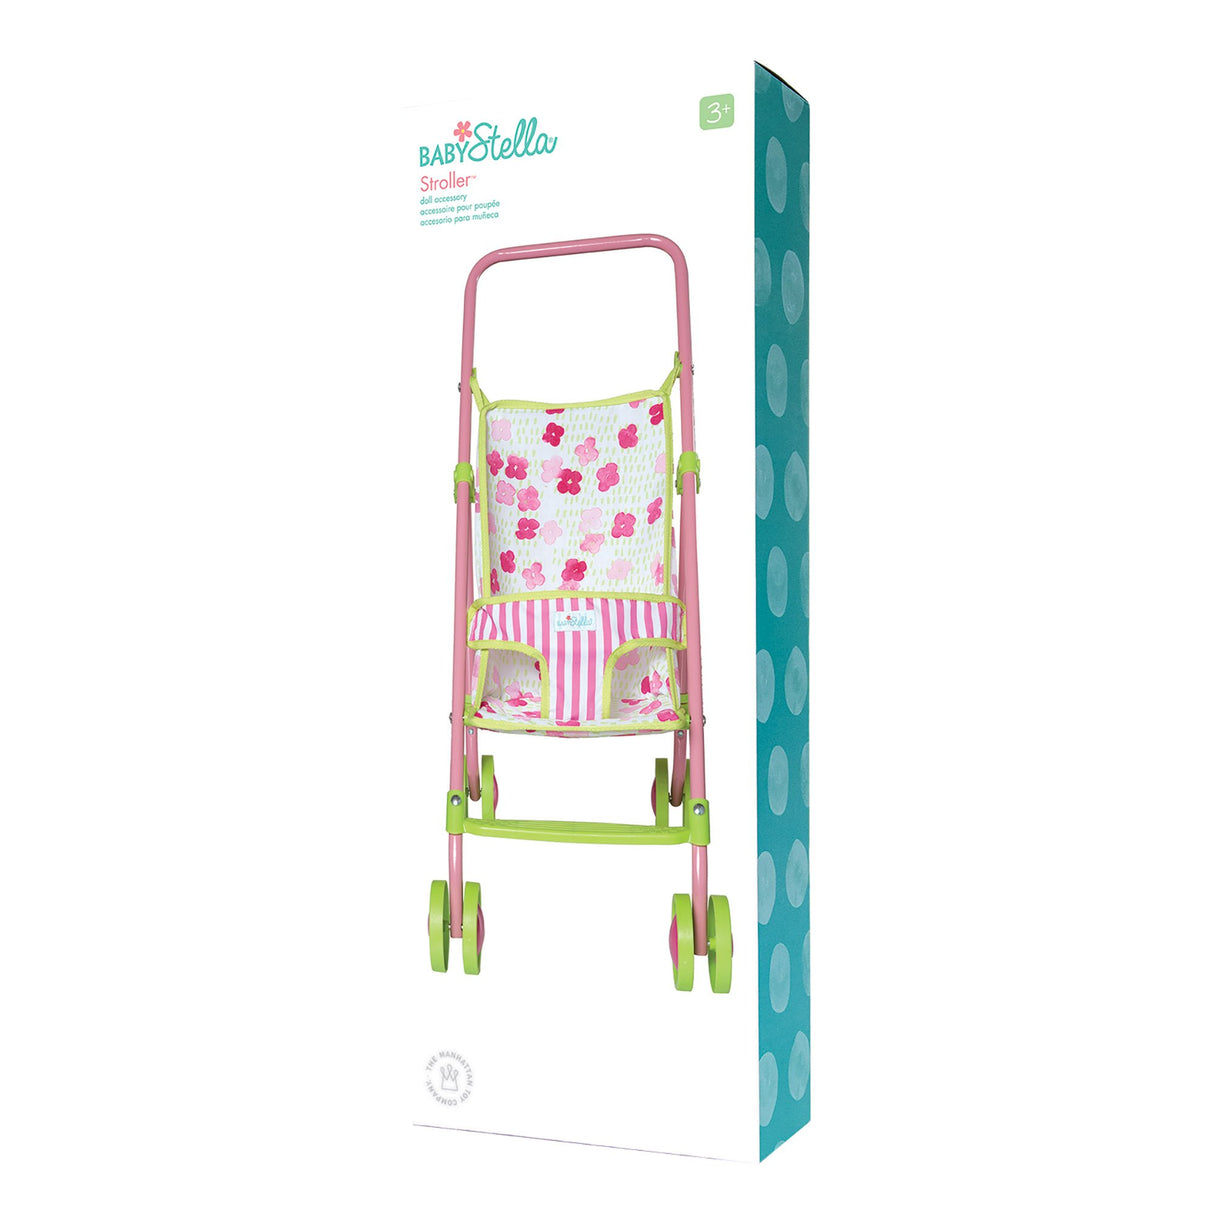 Baby Stella Stroller - Manhattan Toy